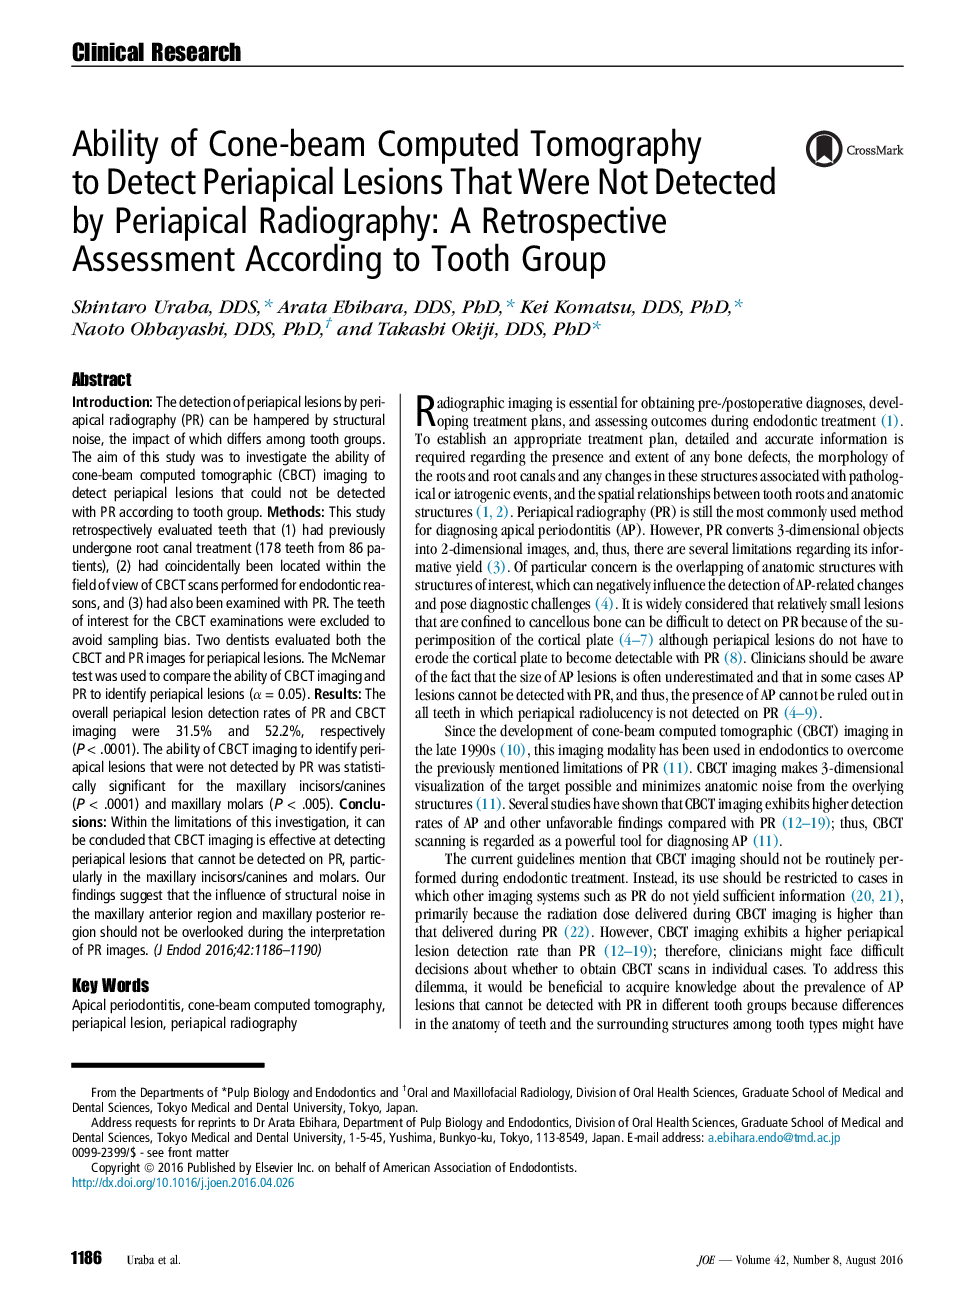 توانایی توموگرافی کامپیوتری پرتوهای مخروطی تا آشکارسازی ضایعات پرایپیکال که توسط رادیوگرافی پری اپیکال تشخیص داده شد: ارزیابی مجدد بر اساس گروه دندان 